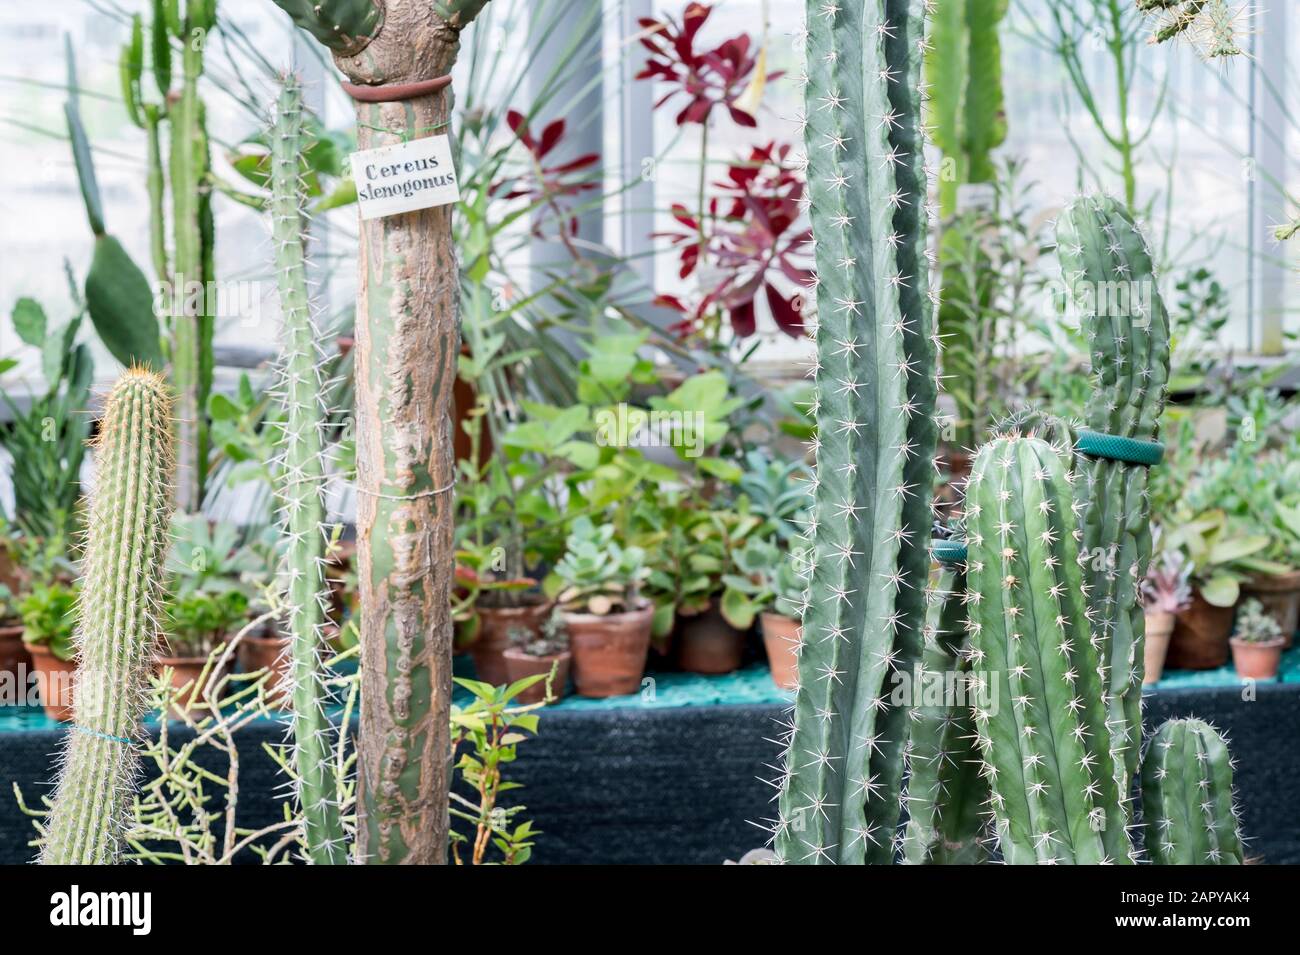 Kaktuszucht Stockfotos und -bilder Kaufen - Alamy